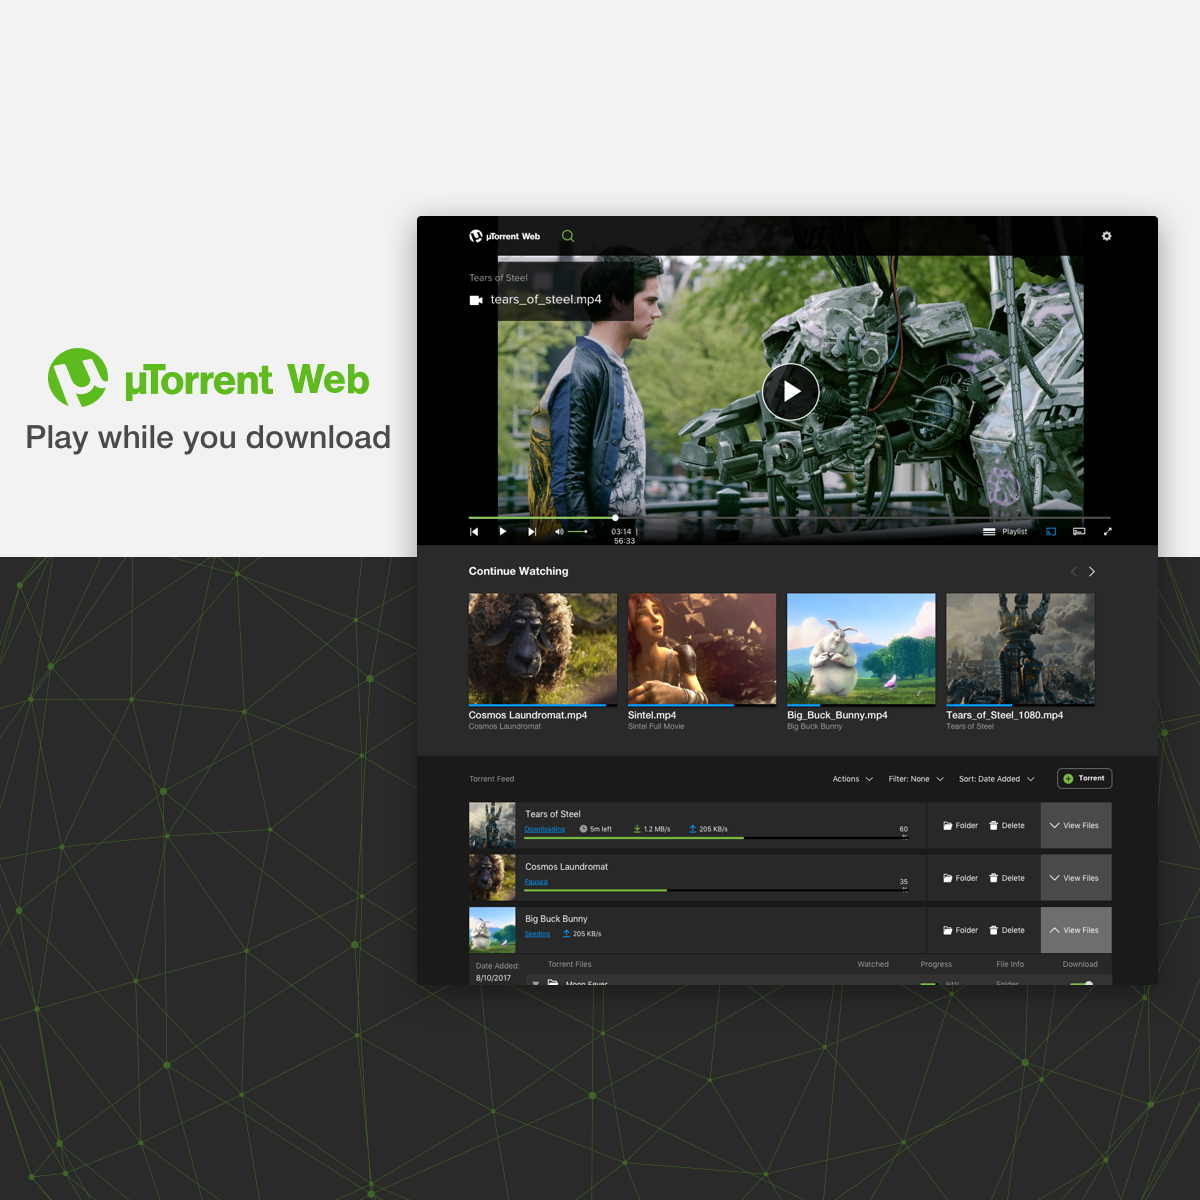 μTorrent® (uTorrent) - a (very) tiny BitTorrent client